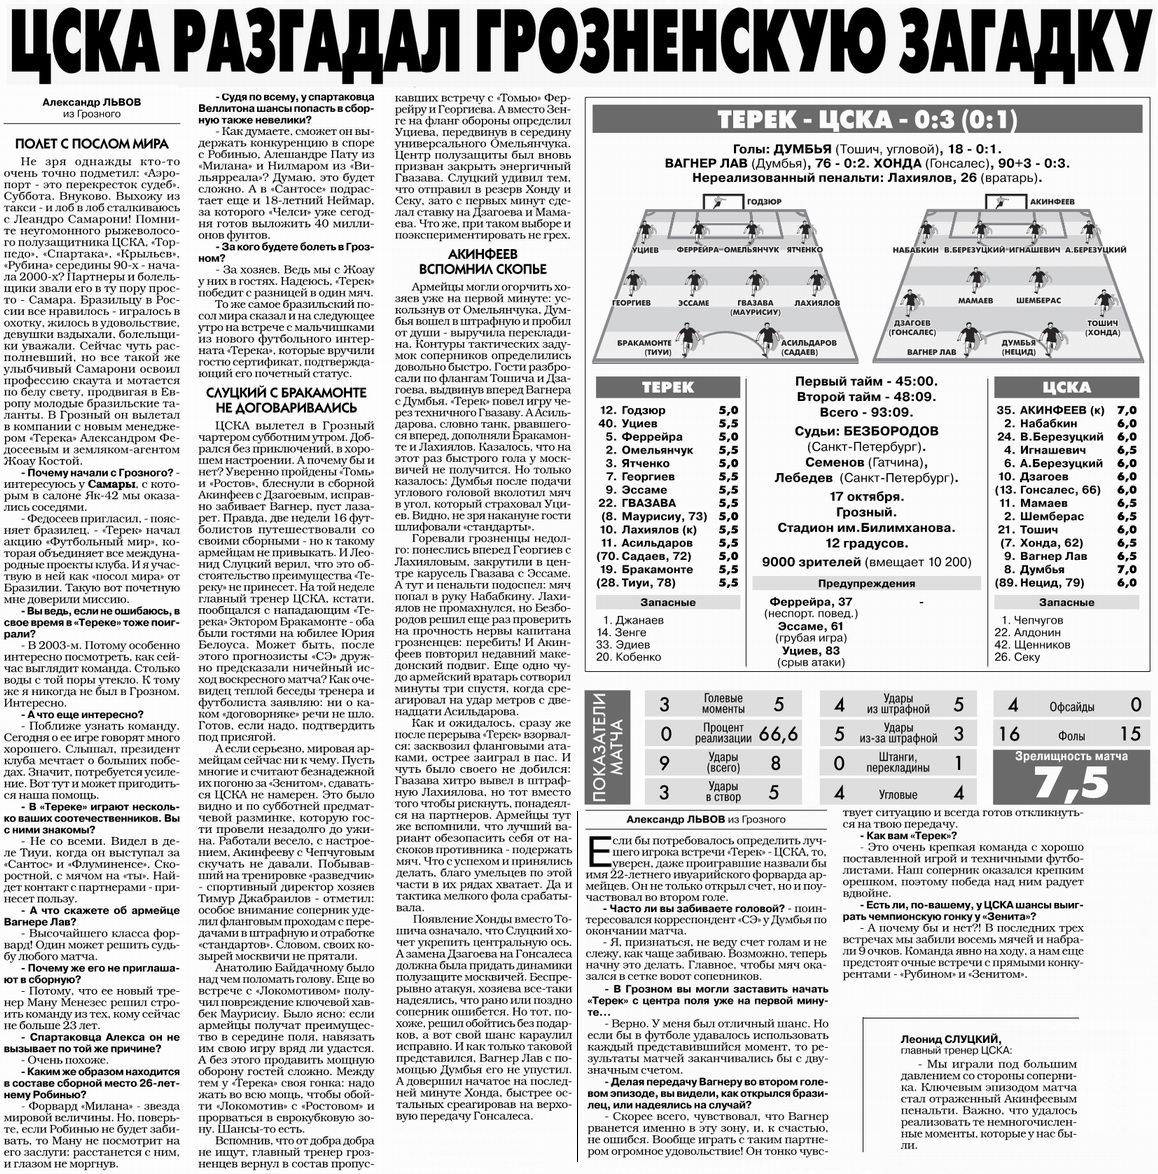 2010-10-17.Terek-CSKA